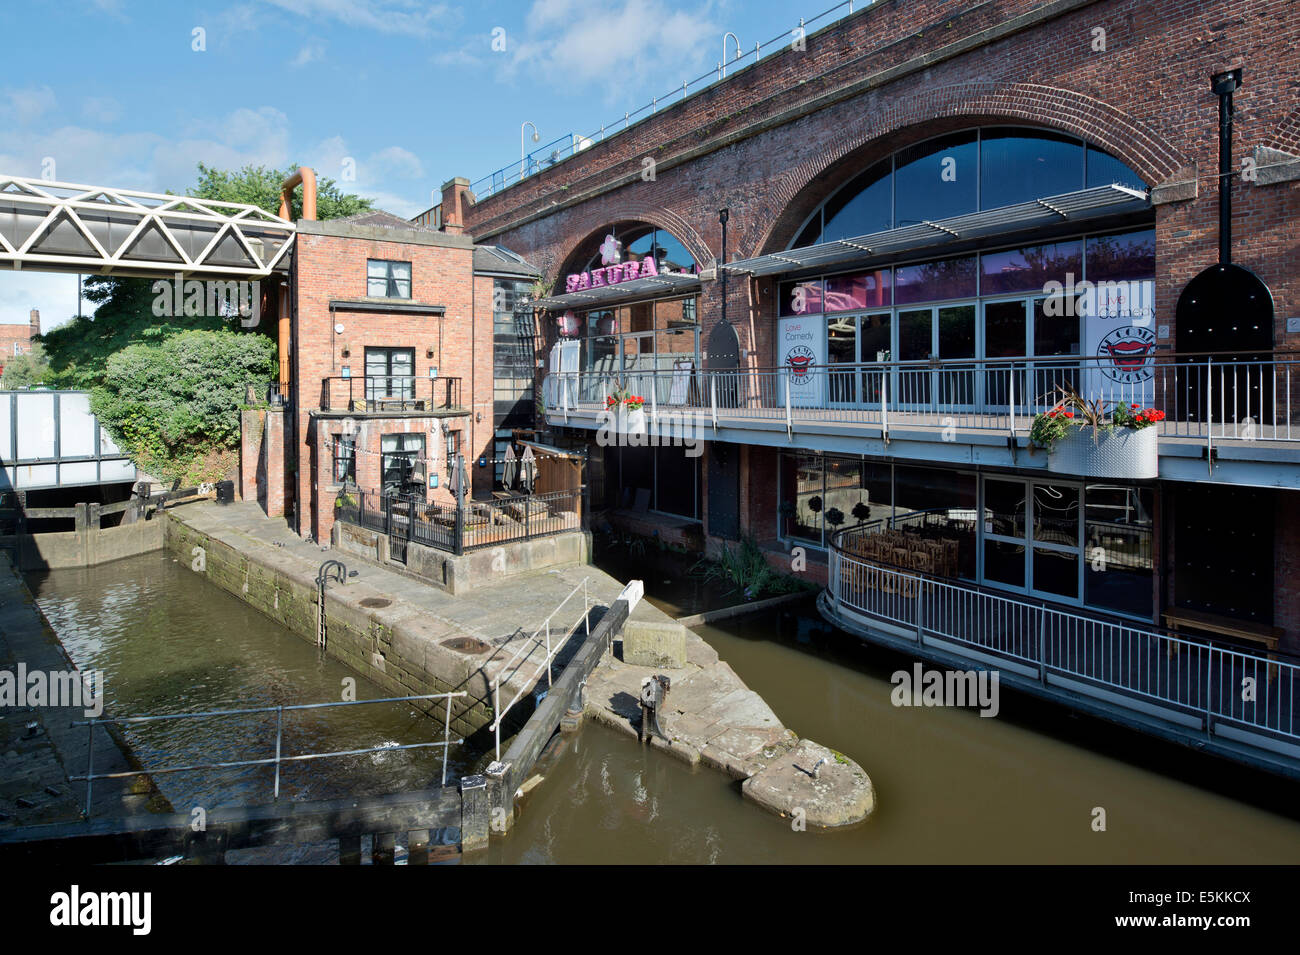 Sakura e The Comedy Store e un altro bar vicini in estate il sole a Deansgate Locks in Manchester. Foto Stock